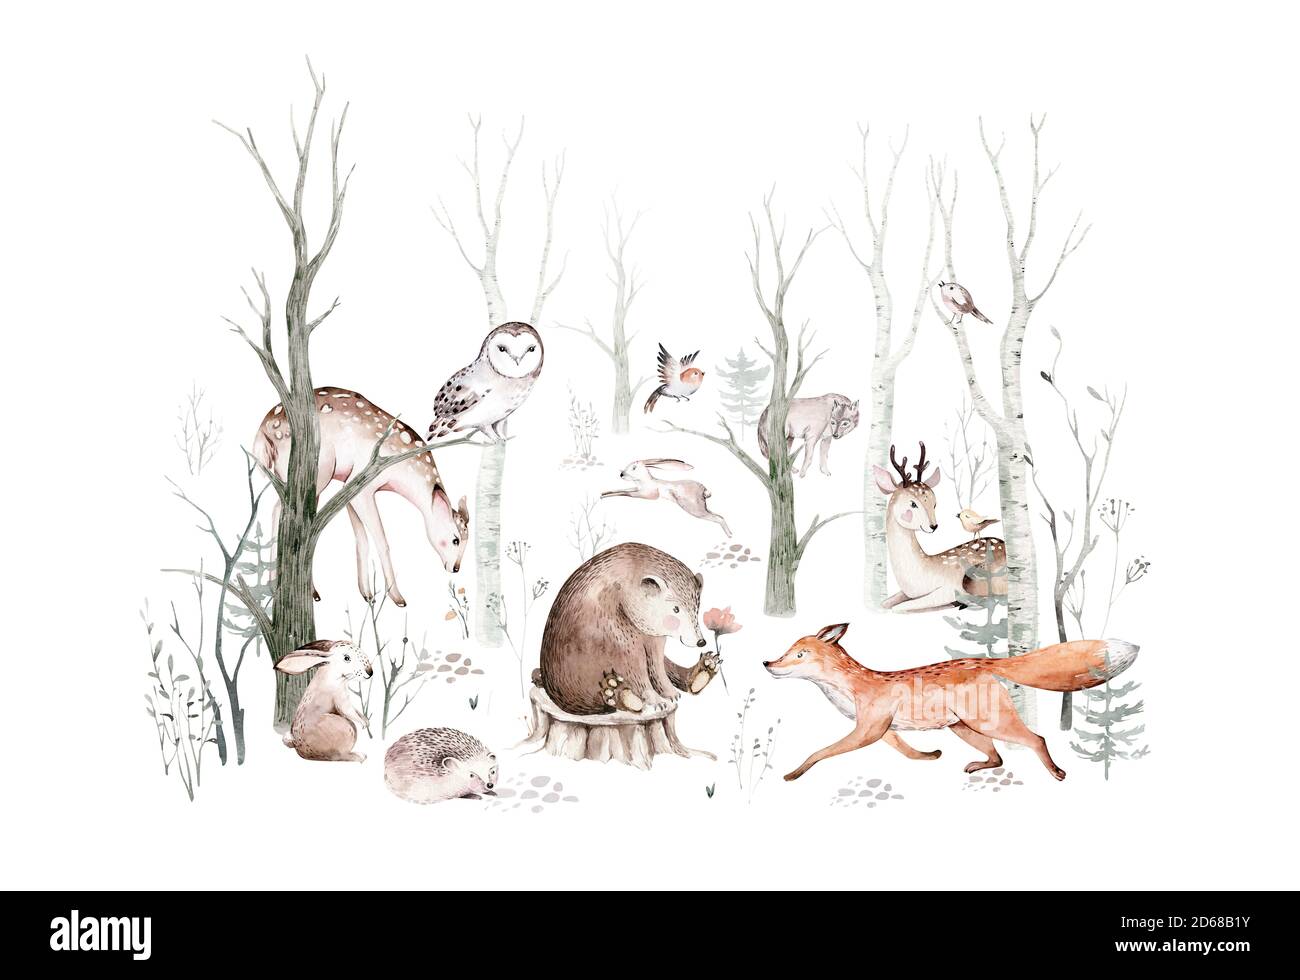 Ensemble animaux des bois. Hibou, hérisson, renard et papillon, lapin Bunny ensemble d'écureuil forestier et de chipmunk, ours et oiseau bébé animal, scandinave Banque D'Images